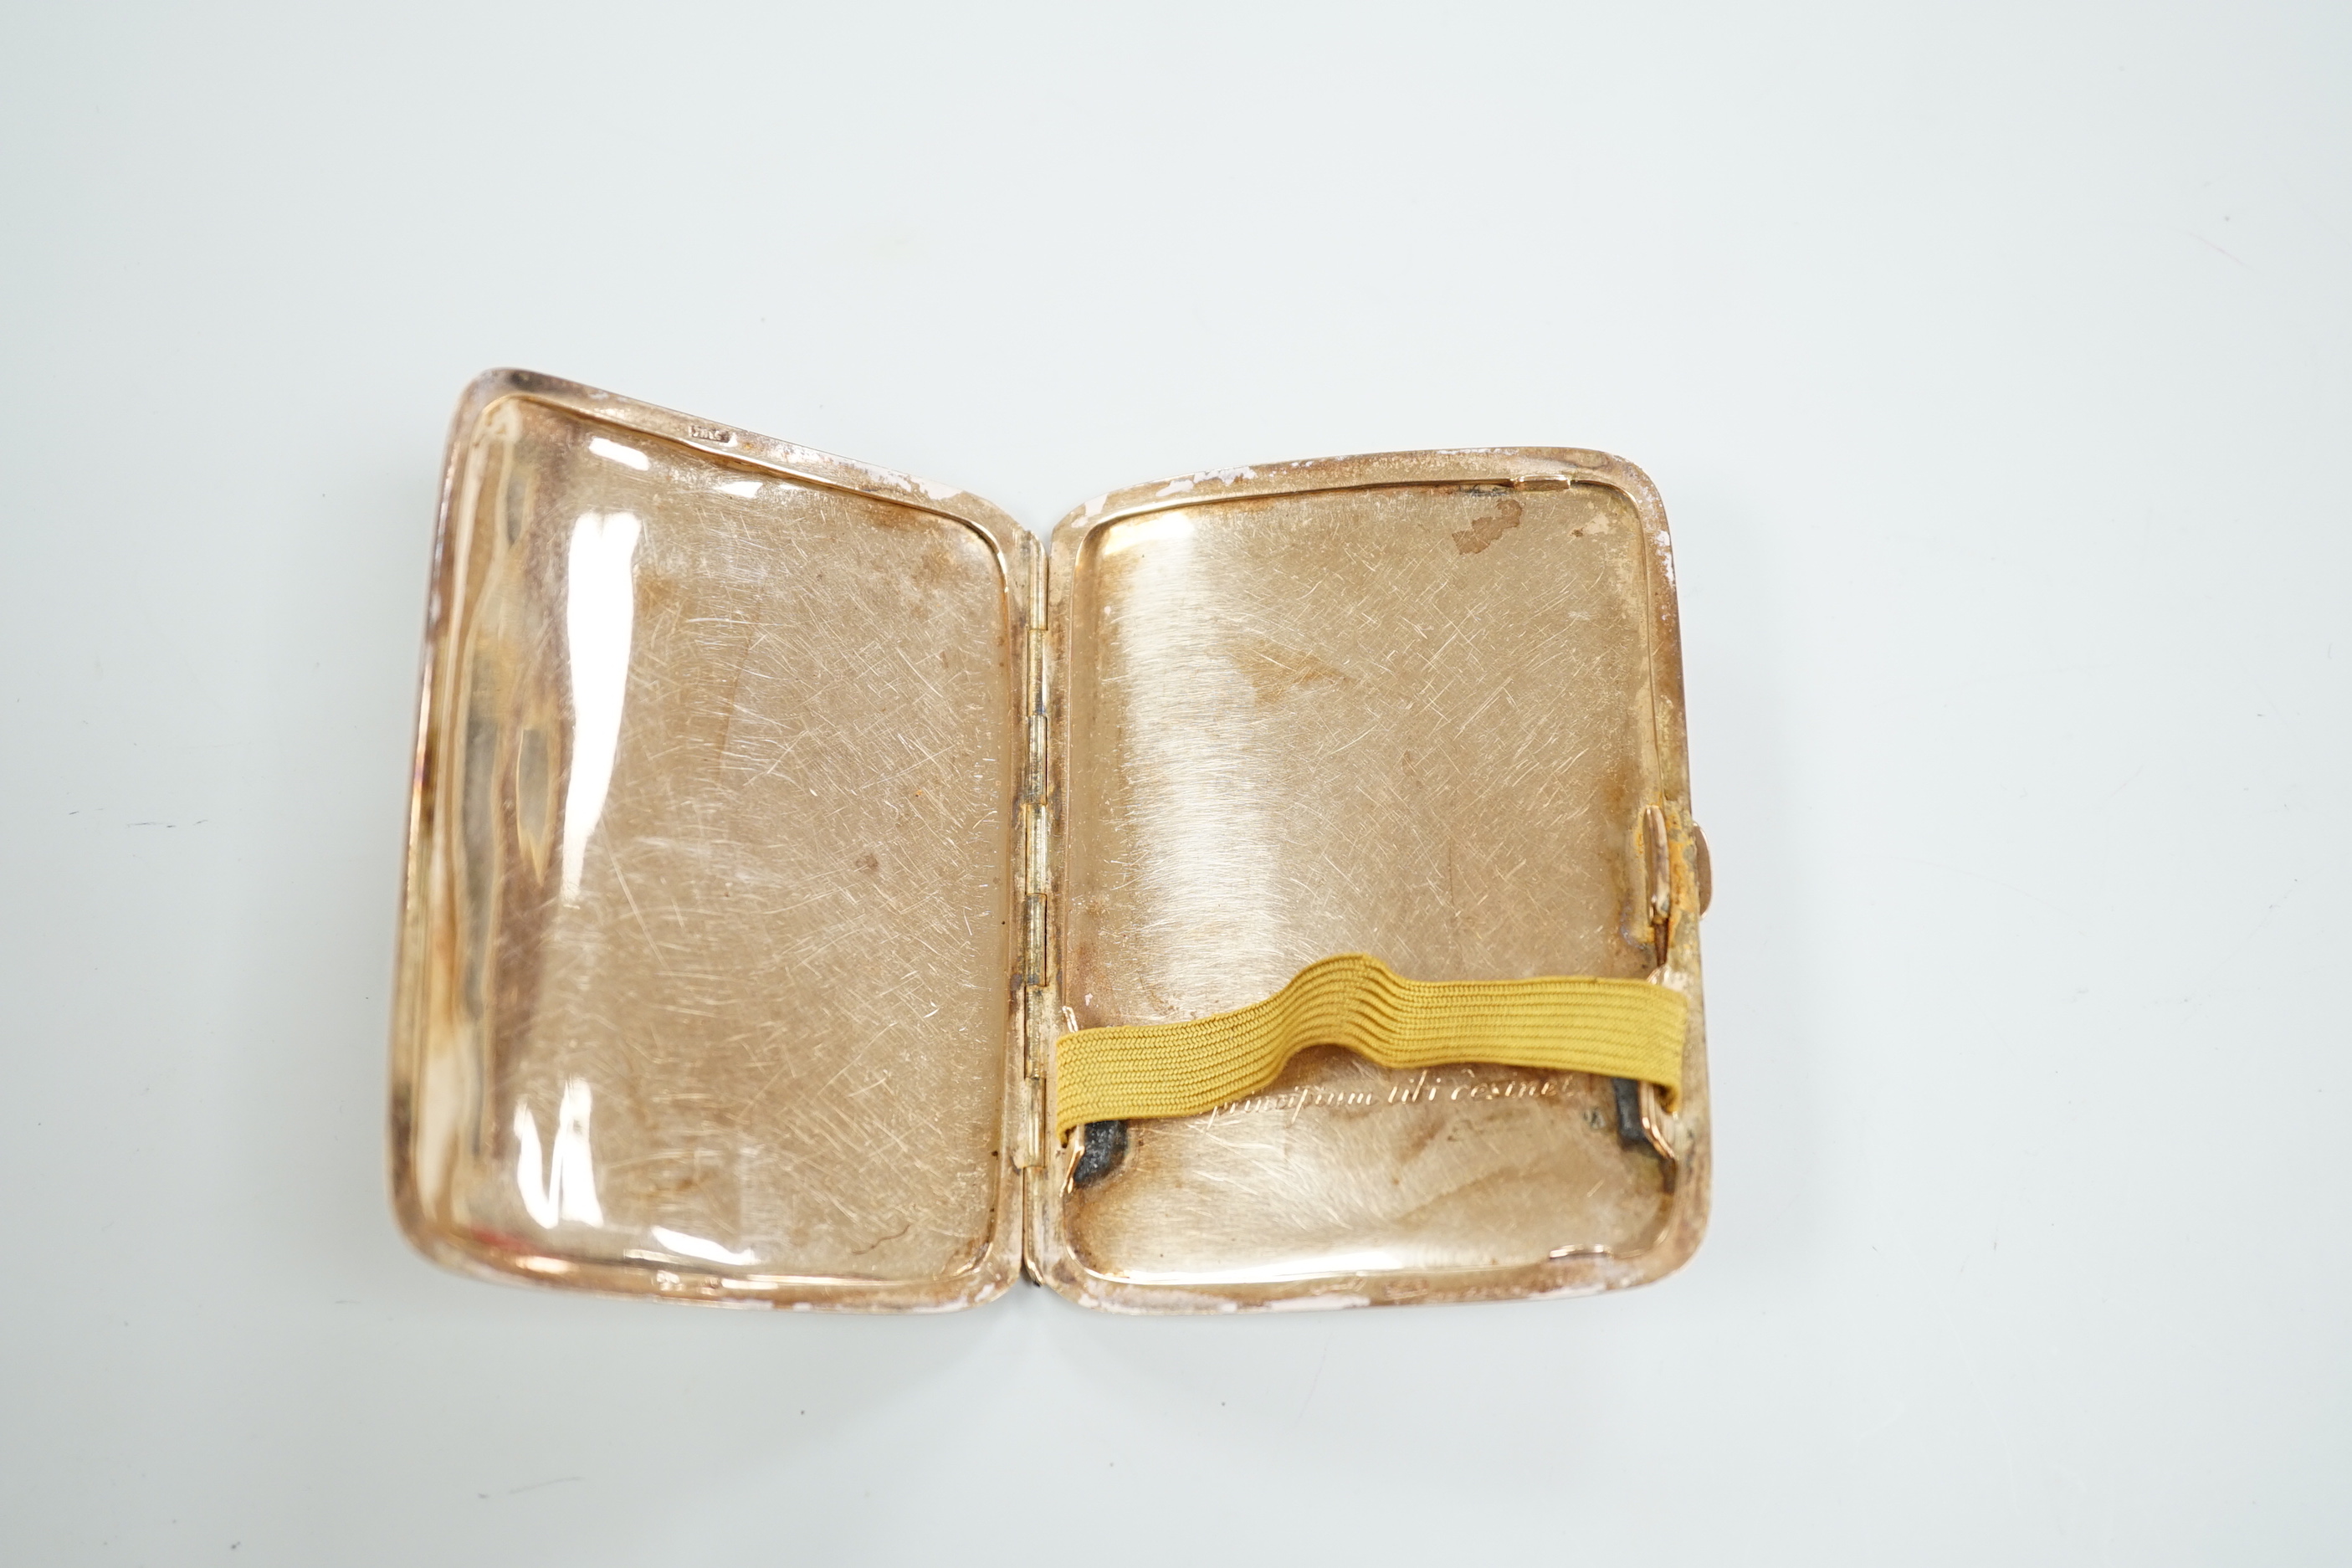 A George V 9ct gold cigarette case, 82mm